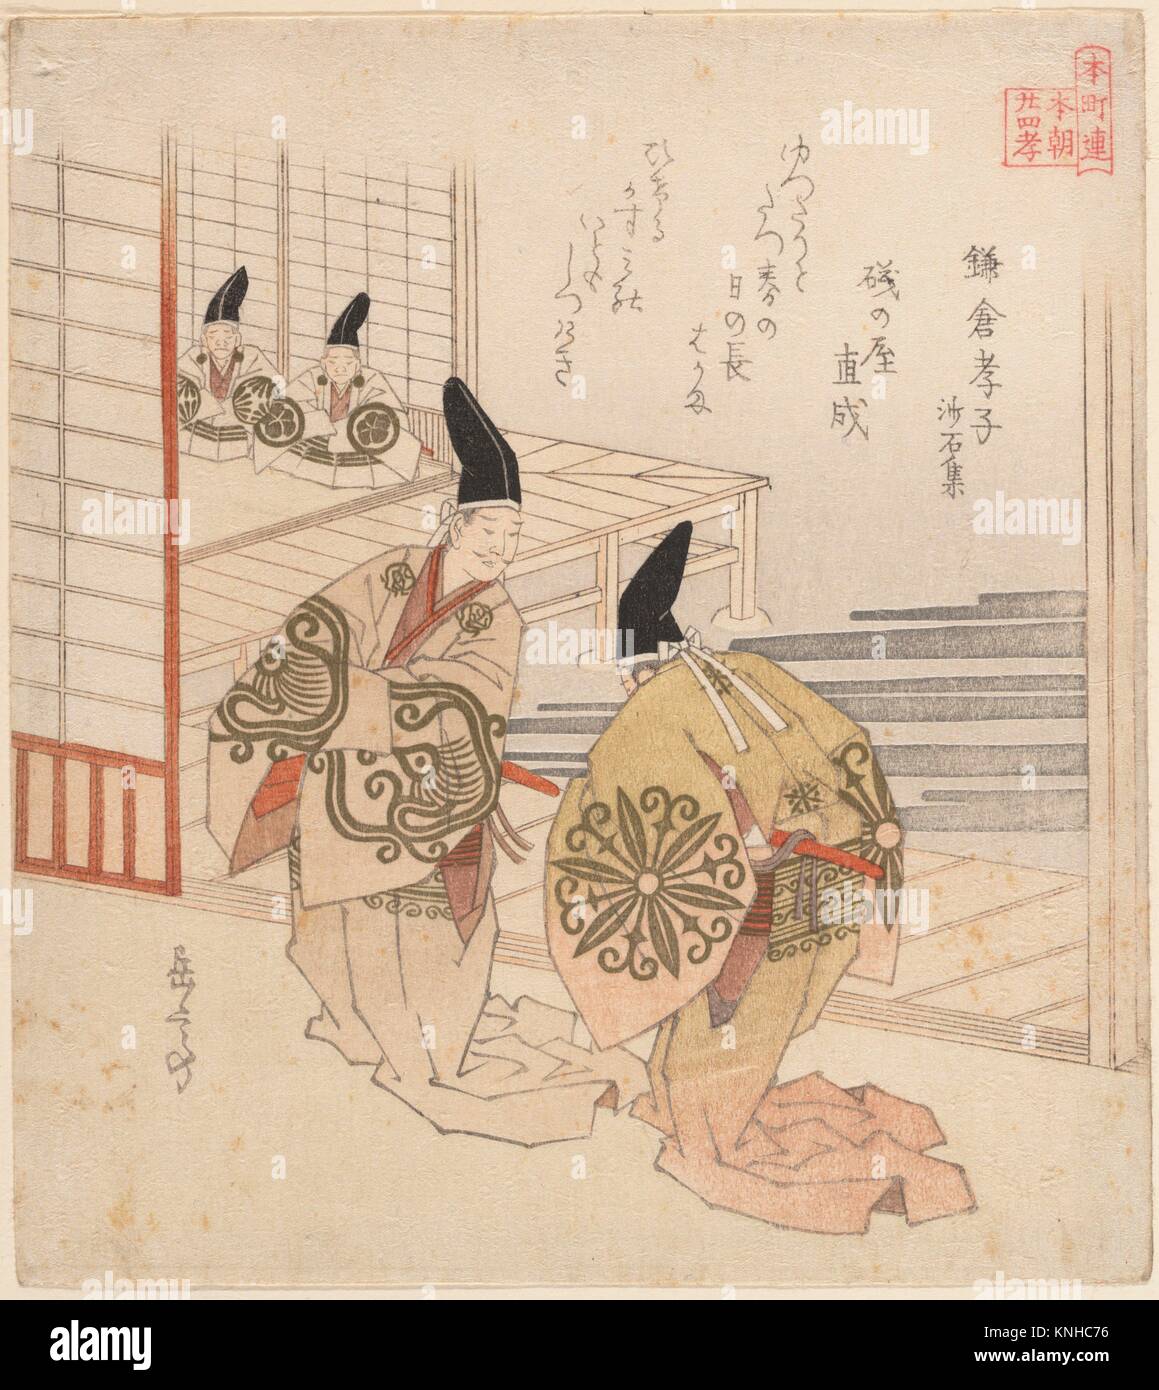 Kamakura sin Koshi/El Hijo Filial en Kamakura, del libro: Sasekishu. Artista: Yashima Gakutei (japonés, 1786?-1868); Período: período Edo Foto de stock